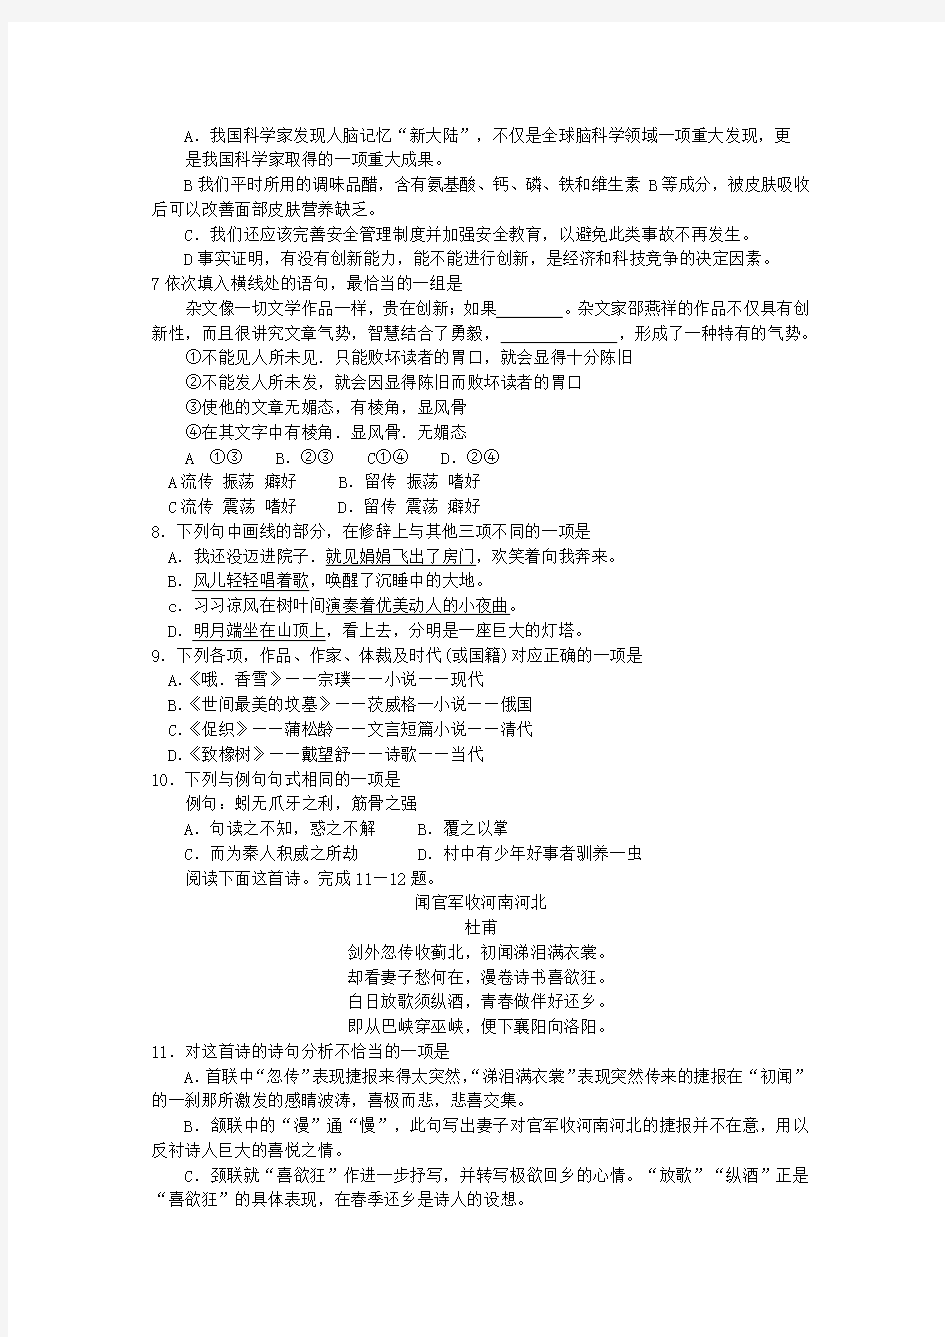 2016年河北省普通高等学校对口招生考试试题及答案